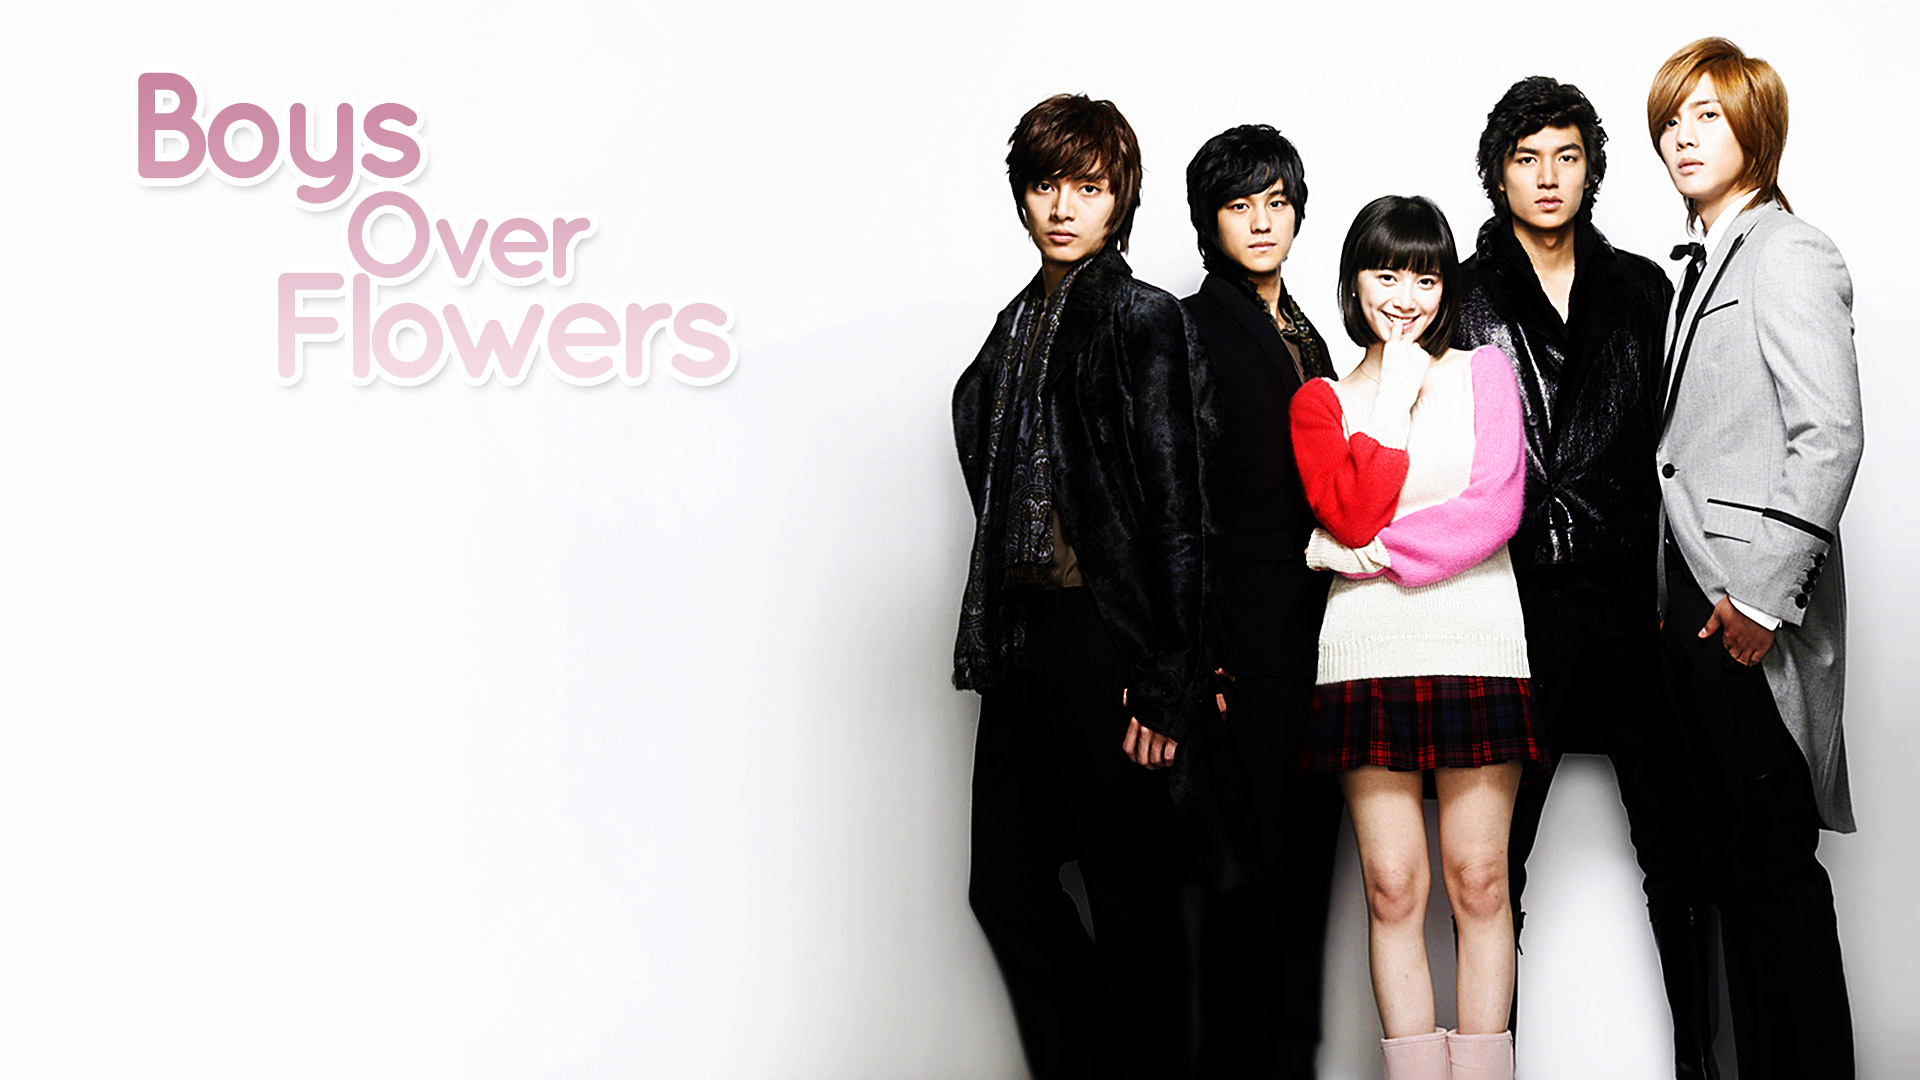 Boys-over-Flowers-korean-dramas-32444328-1920-1080.jpg